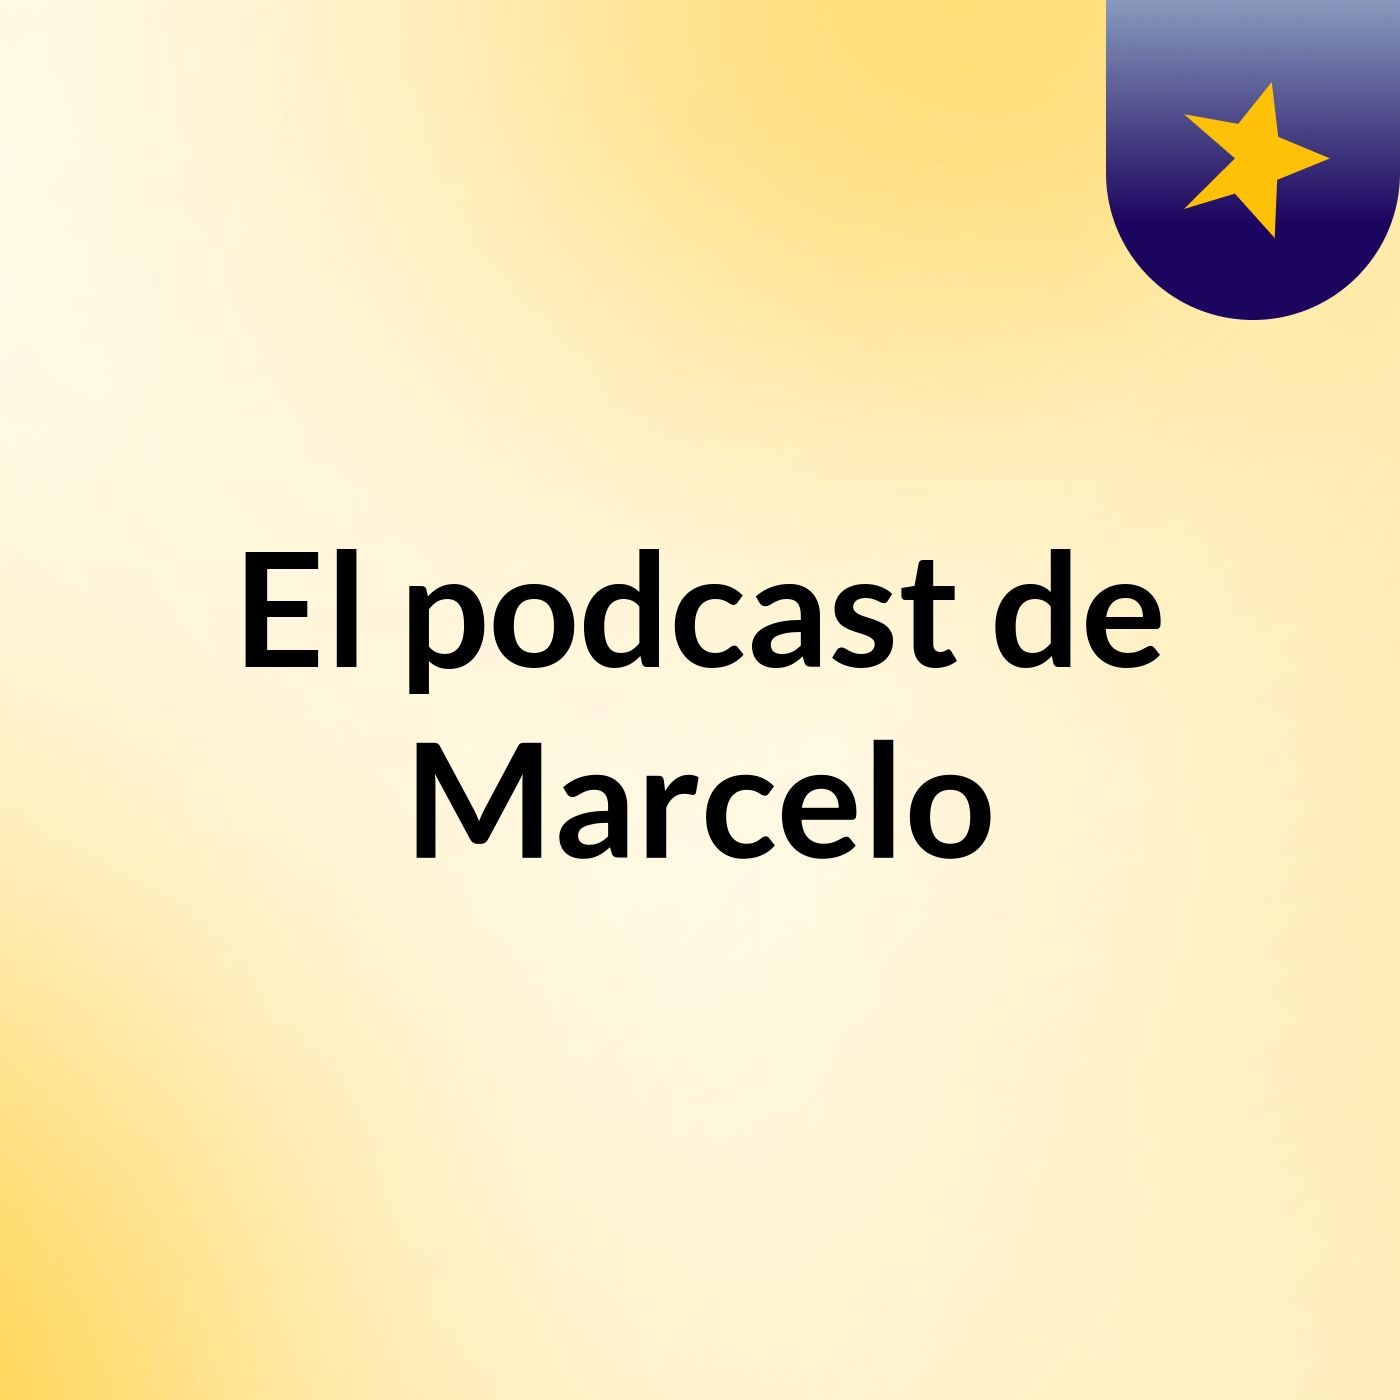 El podcast de Marcelo